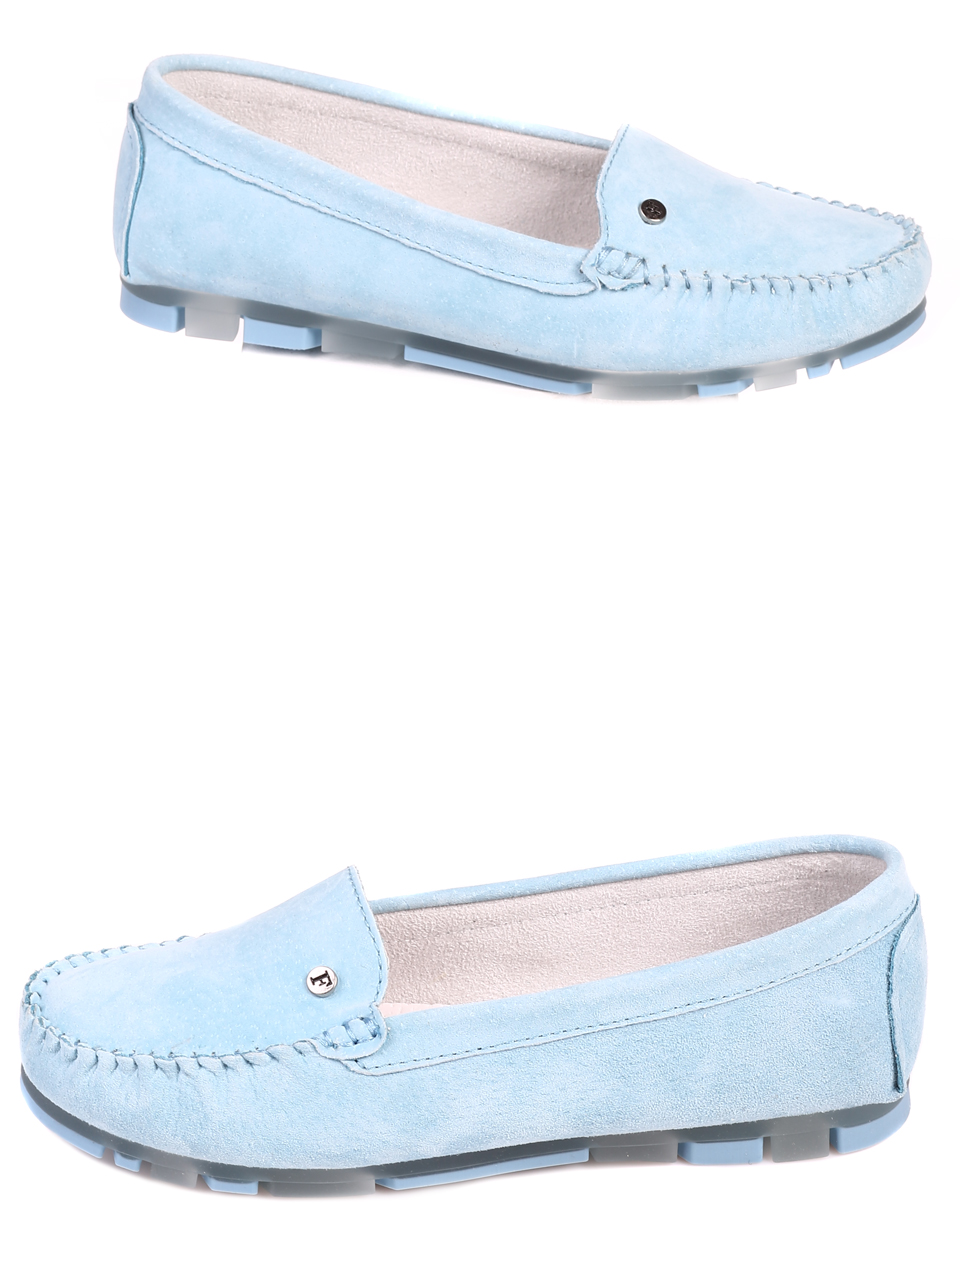 Ежедневни дамски обувки от велур в синьо 3AF-22104 blue